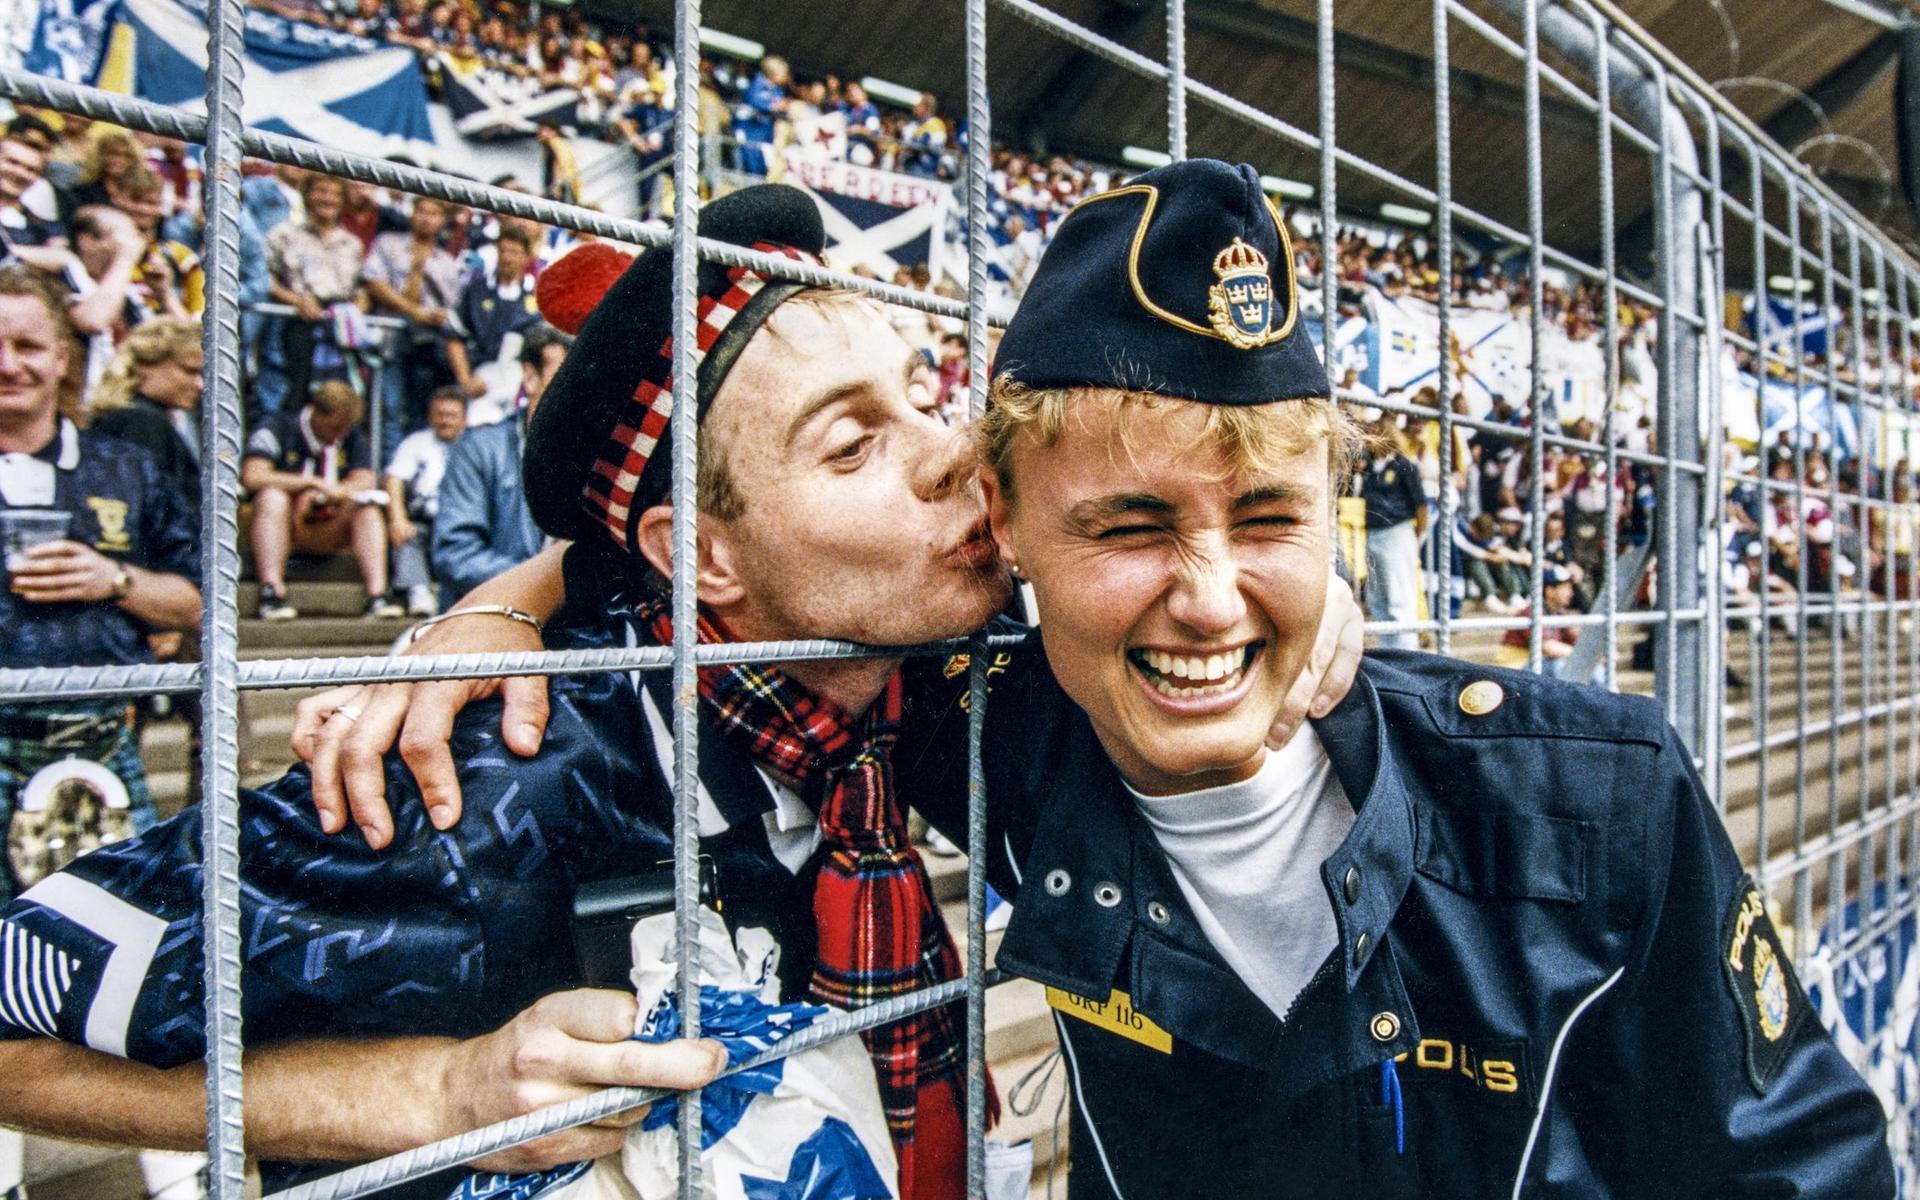 År 1992 spelades fotboll-EM i Sverige. Inte många minns väl vilket land som vann mästerskapen (Danmark) och ingen har väl en aning om hur det gick i matchen mellan Holland och Skottland på Ullevi den 12 juni 1992 (Holland vann med 1-0). Ändå var det denna match, eller åtminstone människor kring den, som stod för mästerskapens minnesvärda ögonblick. En skotsk fotbollssupporter lyckades krångla fram en troligen aningen blöt ölpuss genom stängslet. För svenska fotbollsälskare var bilden trevlig. För skotska fotbollsälskare – vana vid en betydligt kärvare atmosfär mellan poliser och åskådare – var bilden en sensation.  Det var över på någon sekund, men bilden gjorde bättre reklam för Skottland, fotboll och svenska poliser än någon reklamkampanj. Den svenska poliskvinnan, Marianne Lindkvist, blev efter mästerskapen inte helt överraskande bjuden på en resa till Edinburgh av en lycklig köpmannaförening. Där sammanfördes hon åter med fotbollssupportern David McGaw som inför ett skotskt pressuppbåd gav henne ytterligare puss. 